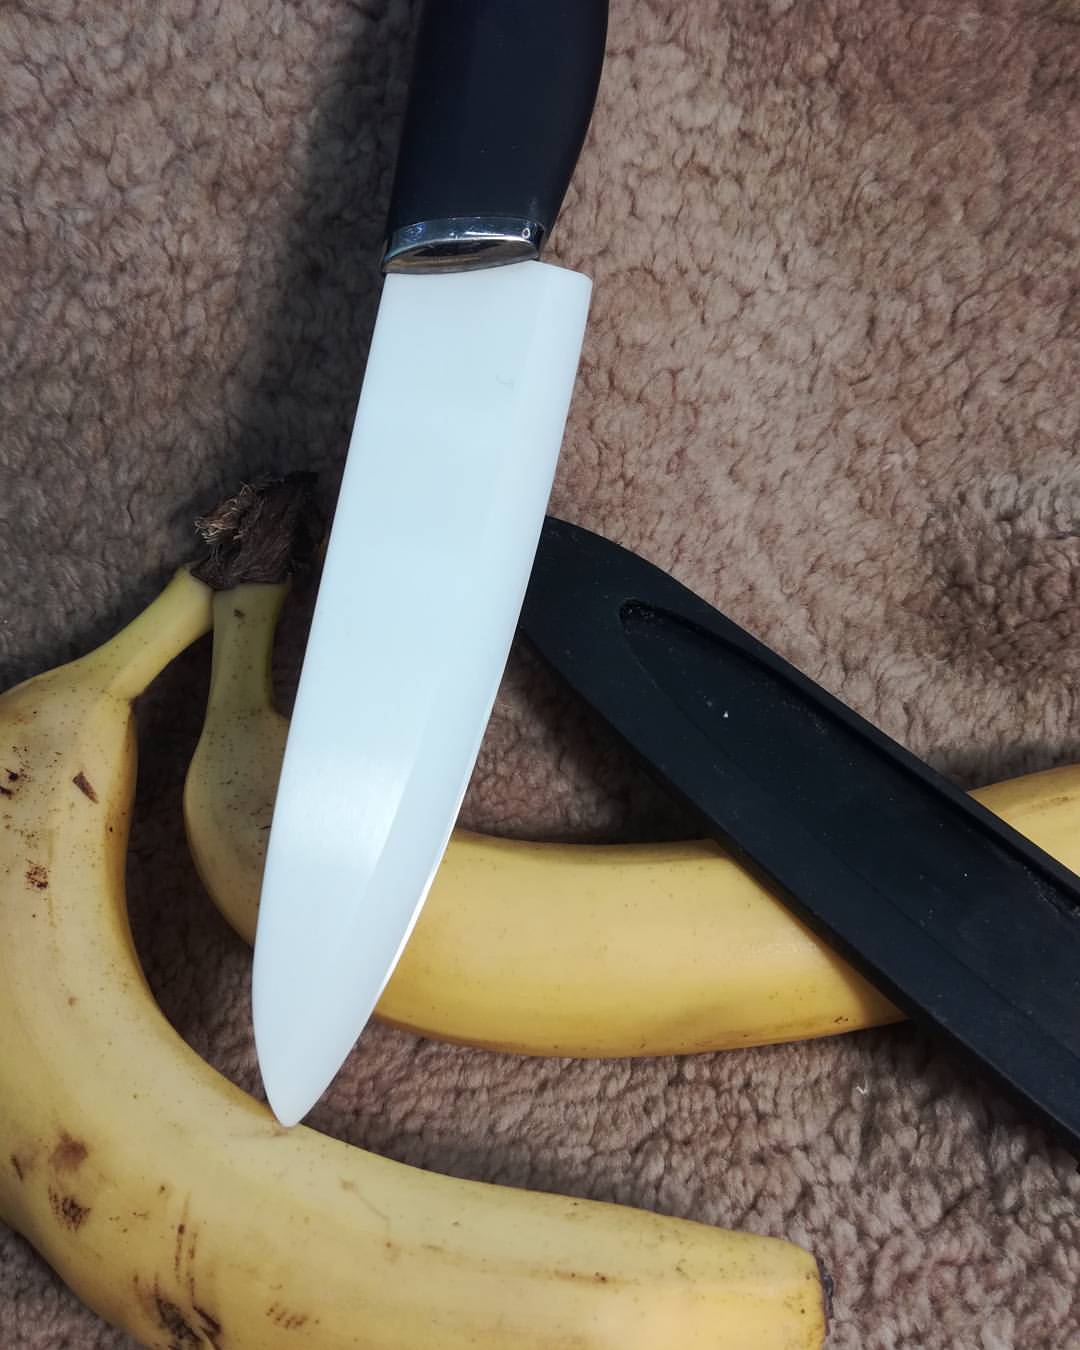 Достоинства керамического ножа и как его наточить в домашних условиях